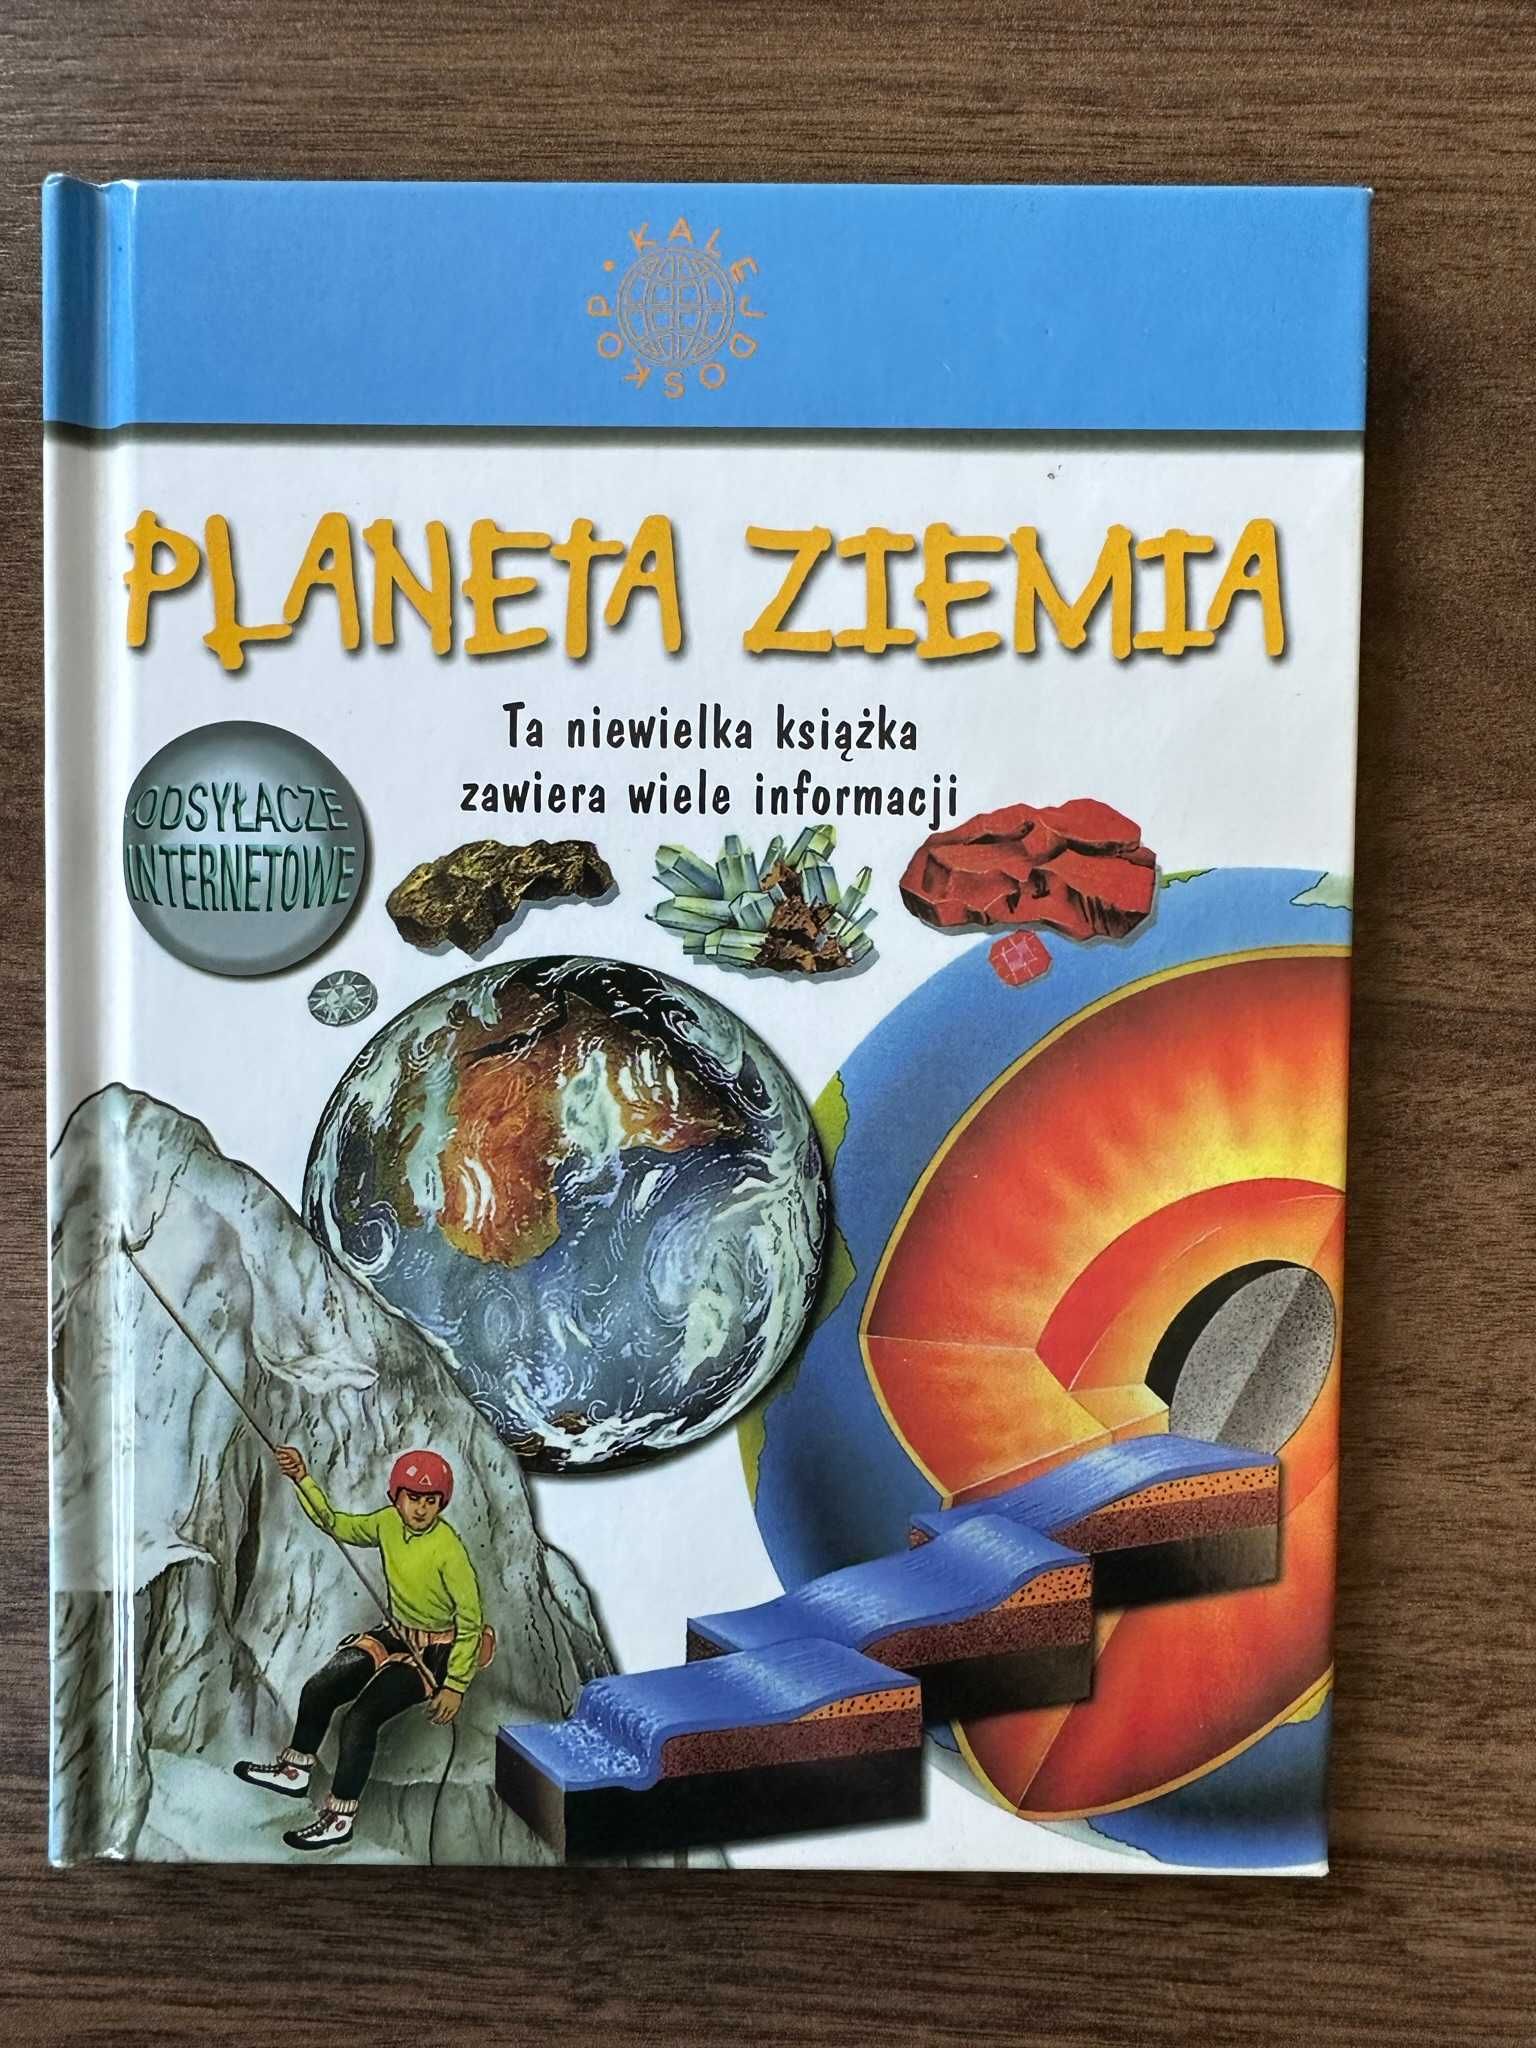 Książka "Planeta ziemia" na sprzedaż